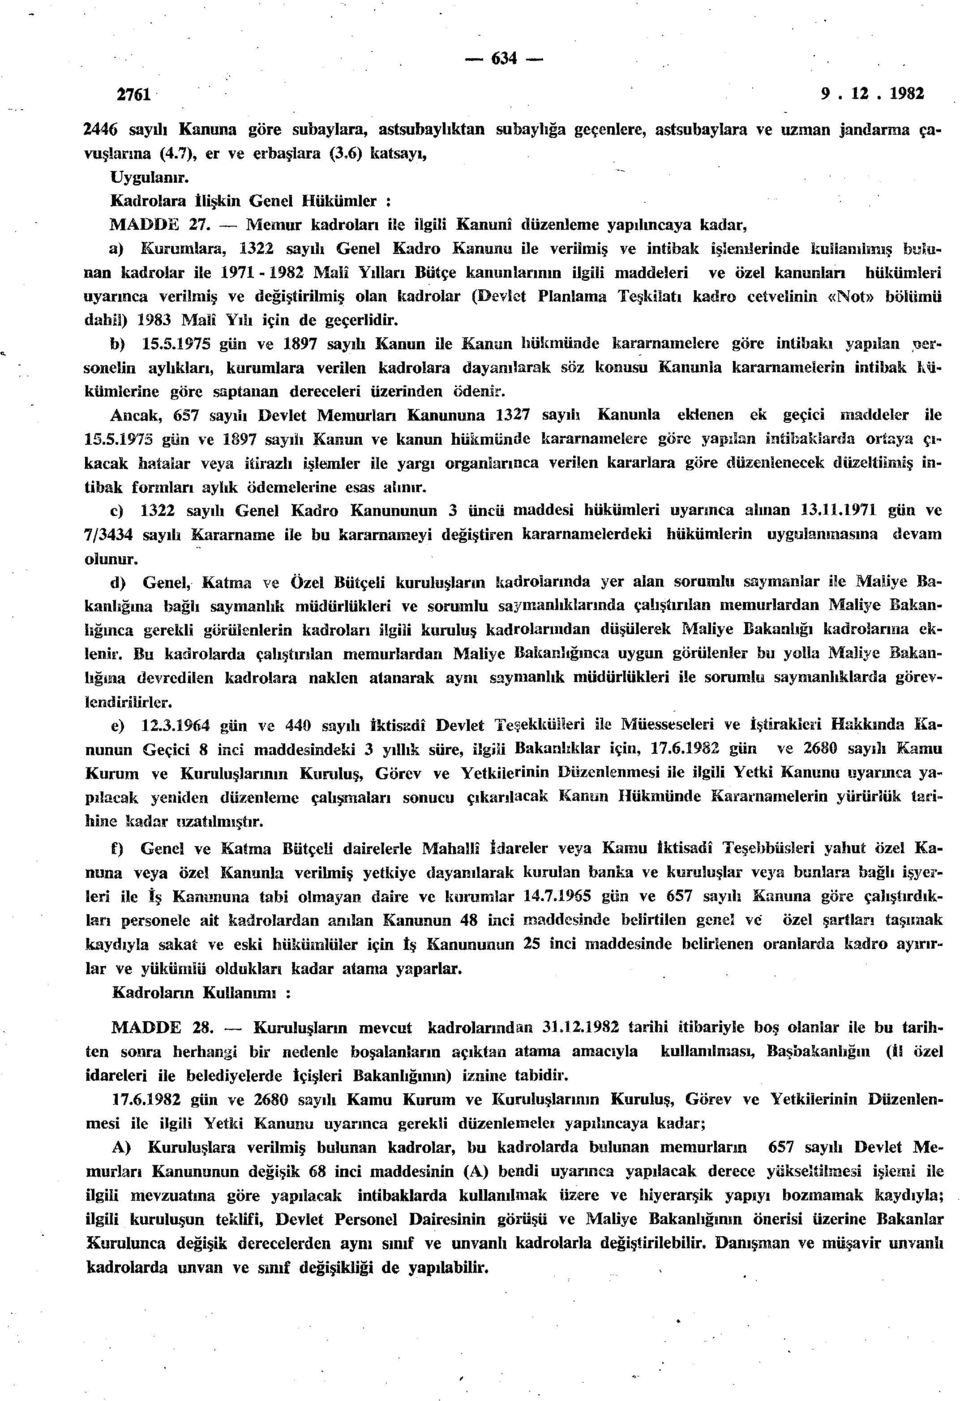 Memur kadroları ile ilgili Kanunî düzenleme yapılıncaya kadar, a) Kurumlara, 1322 sayılı Genel Kadro Kanunu ile verilmiş ve intibak işlemlerinde kullanılmış bulunan kadrolar ile 1971-1982 Malî